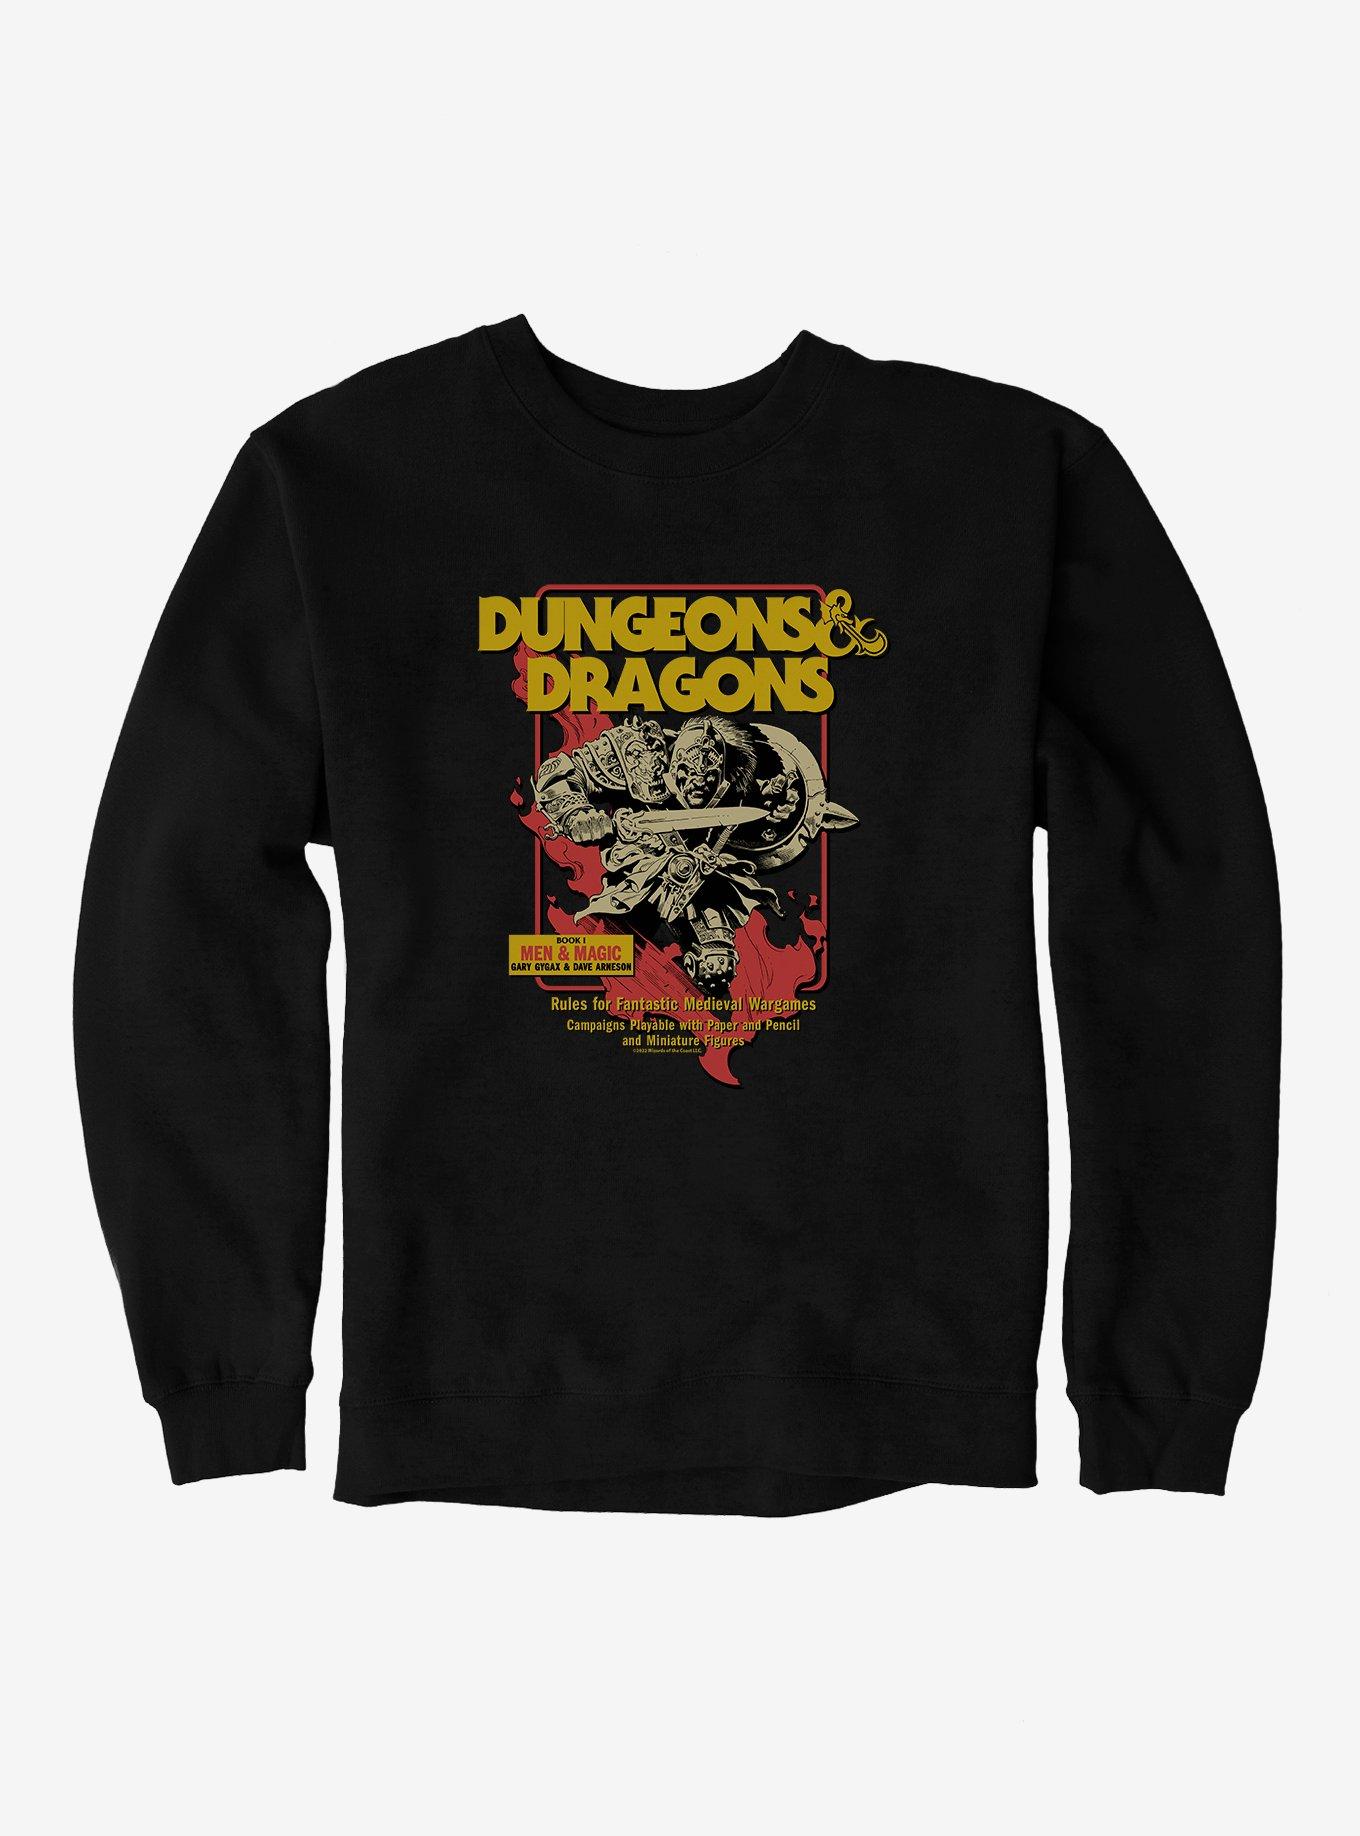 Dungeons & Dragons Book I Men & Magic Sweatshirt, BLACK, hi-res